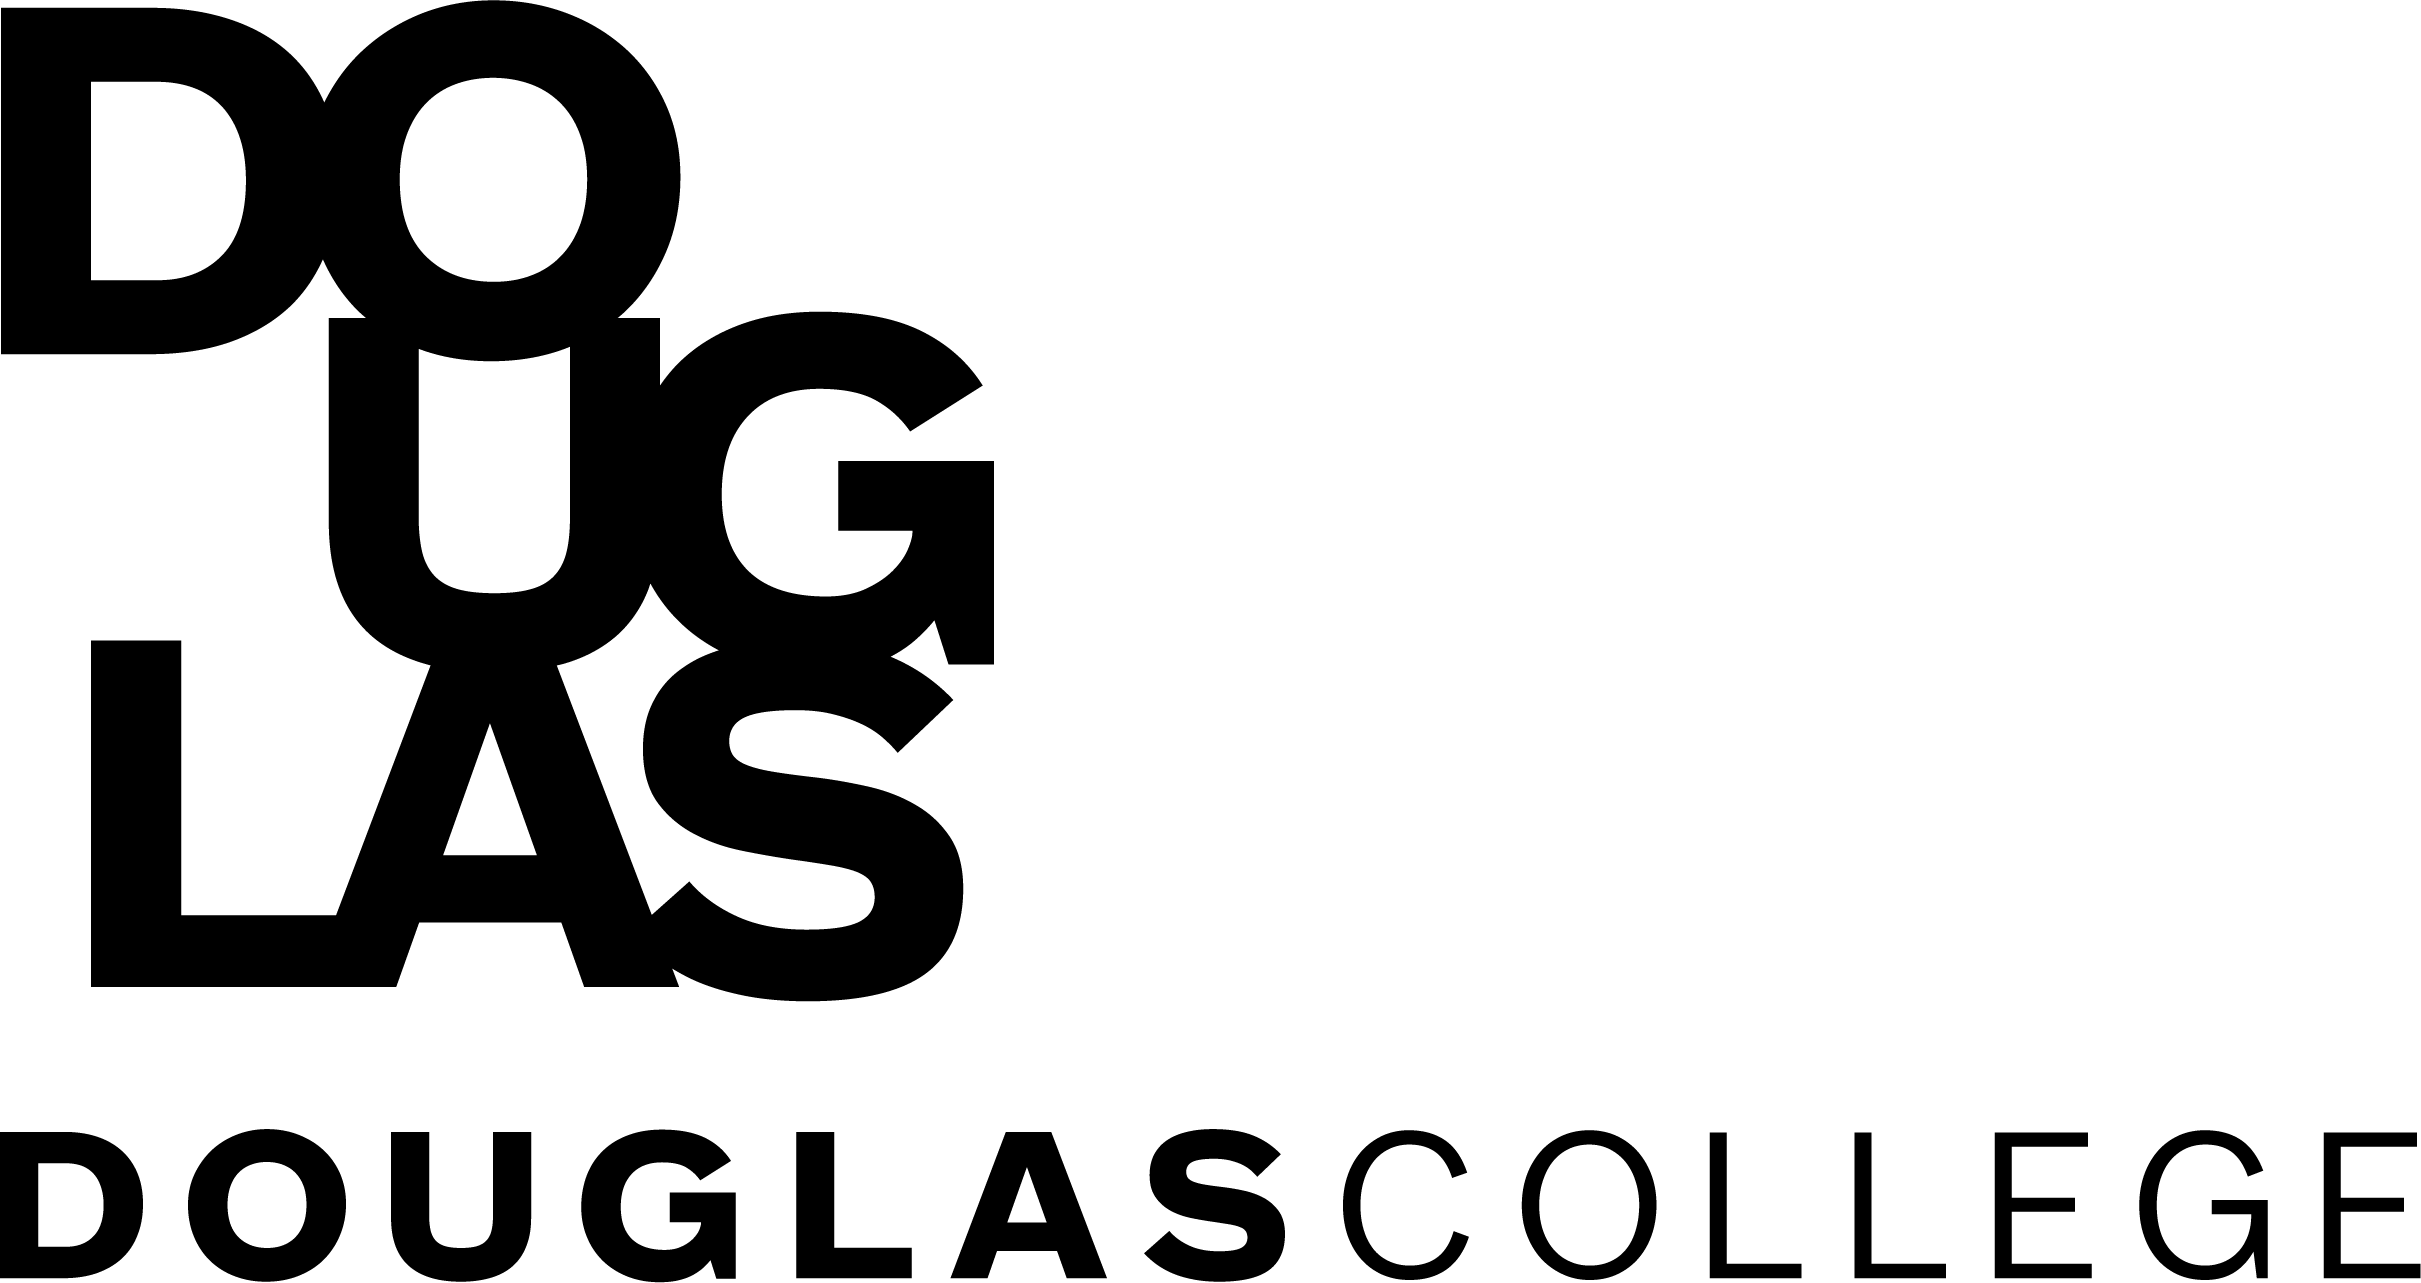 douglas-college-logo-ver3-k4.89f38e31883.png